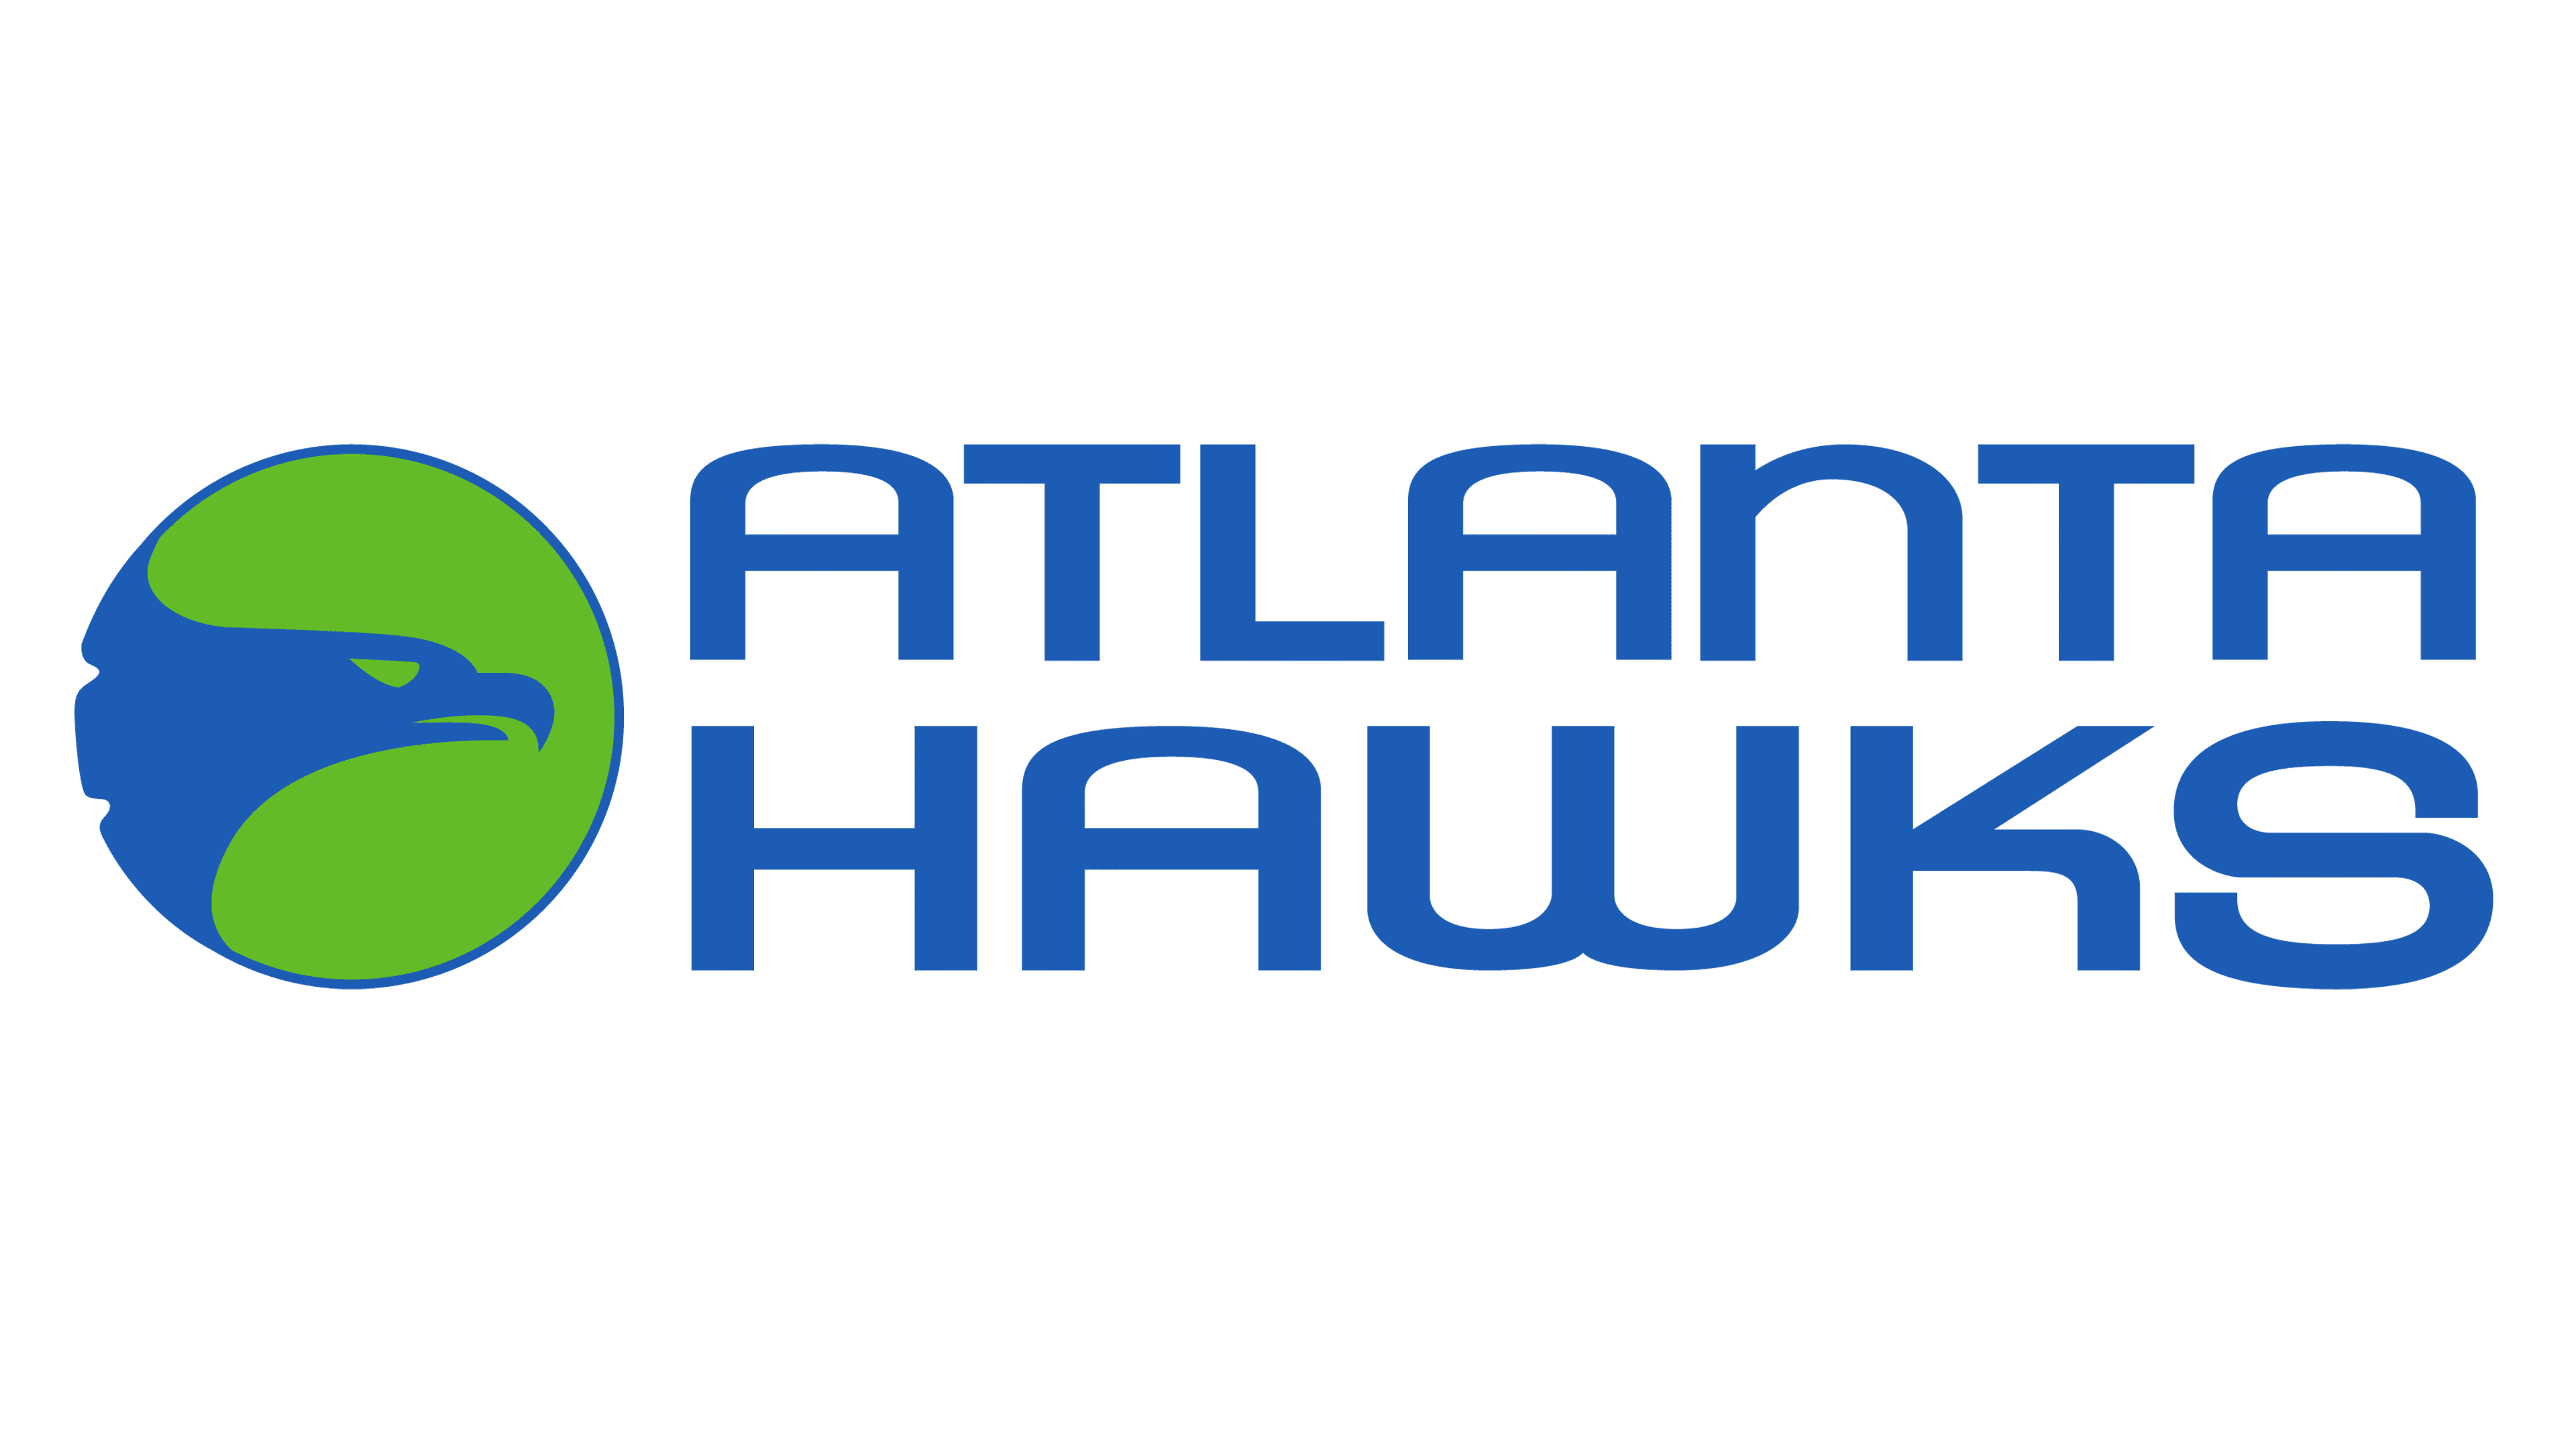 Atlanta Hawks Logo History